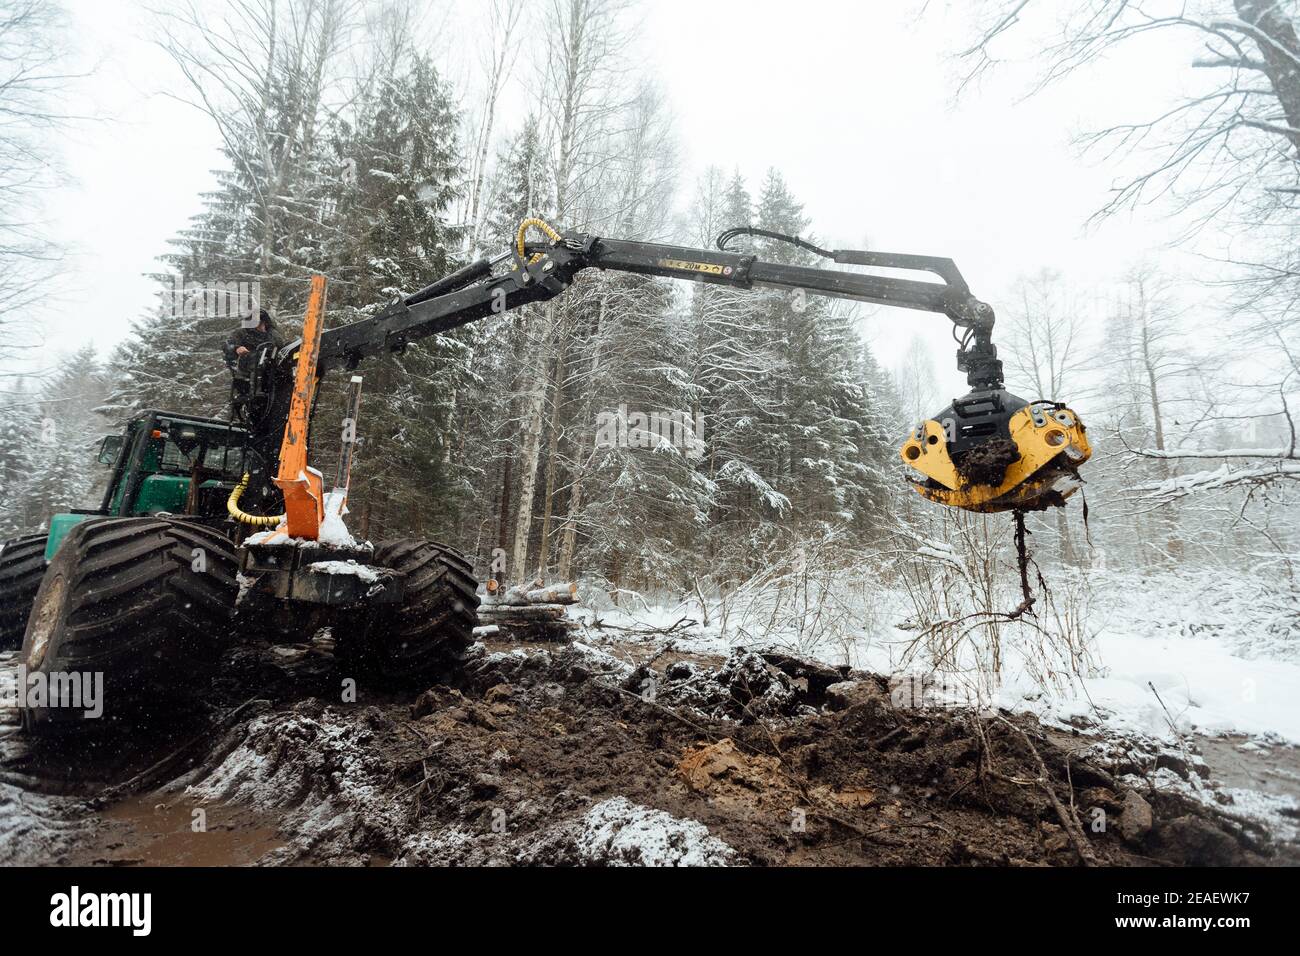 la cosechadora corta árboles, cosecha industrial de madera con la ayuda de una máquina automatizada, muchos árboles que caen en el bosque de invierno Foto de stock